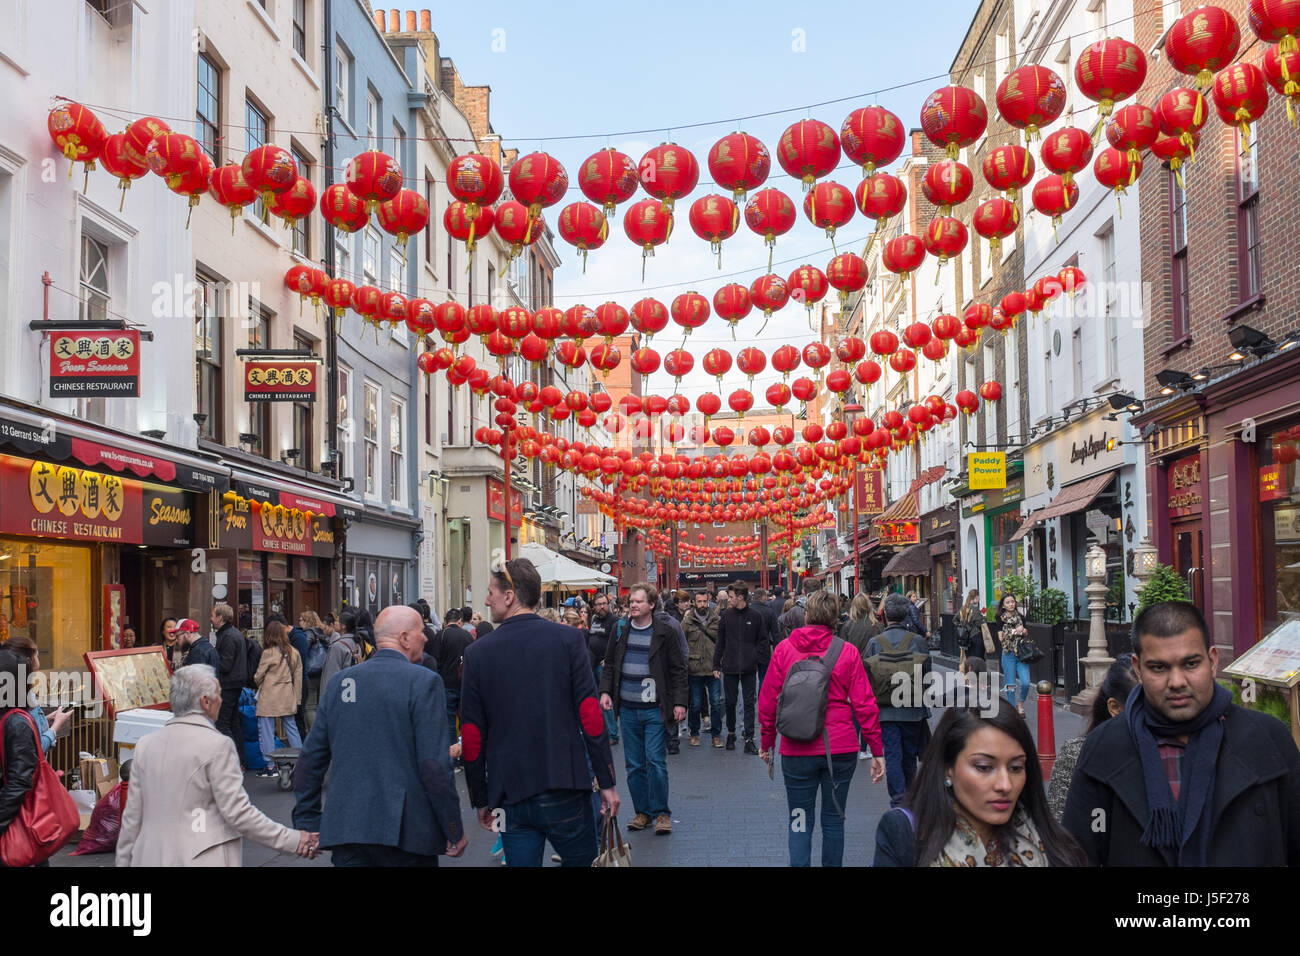 Lanternes chinoises suspendues au-dessus de Wardour Street dans le quartier chinois de Londres Banque D'Images